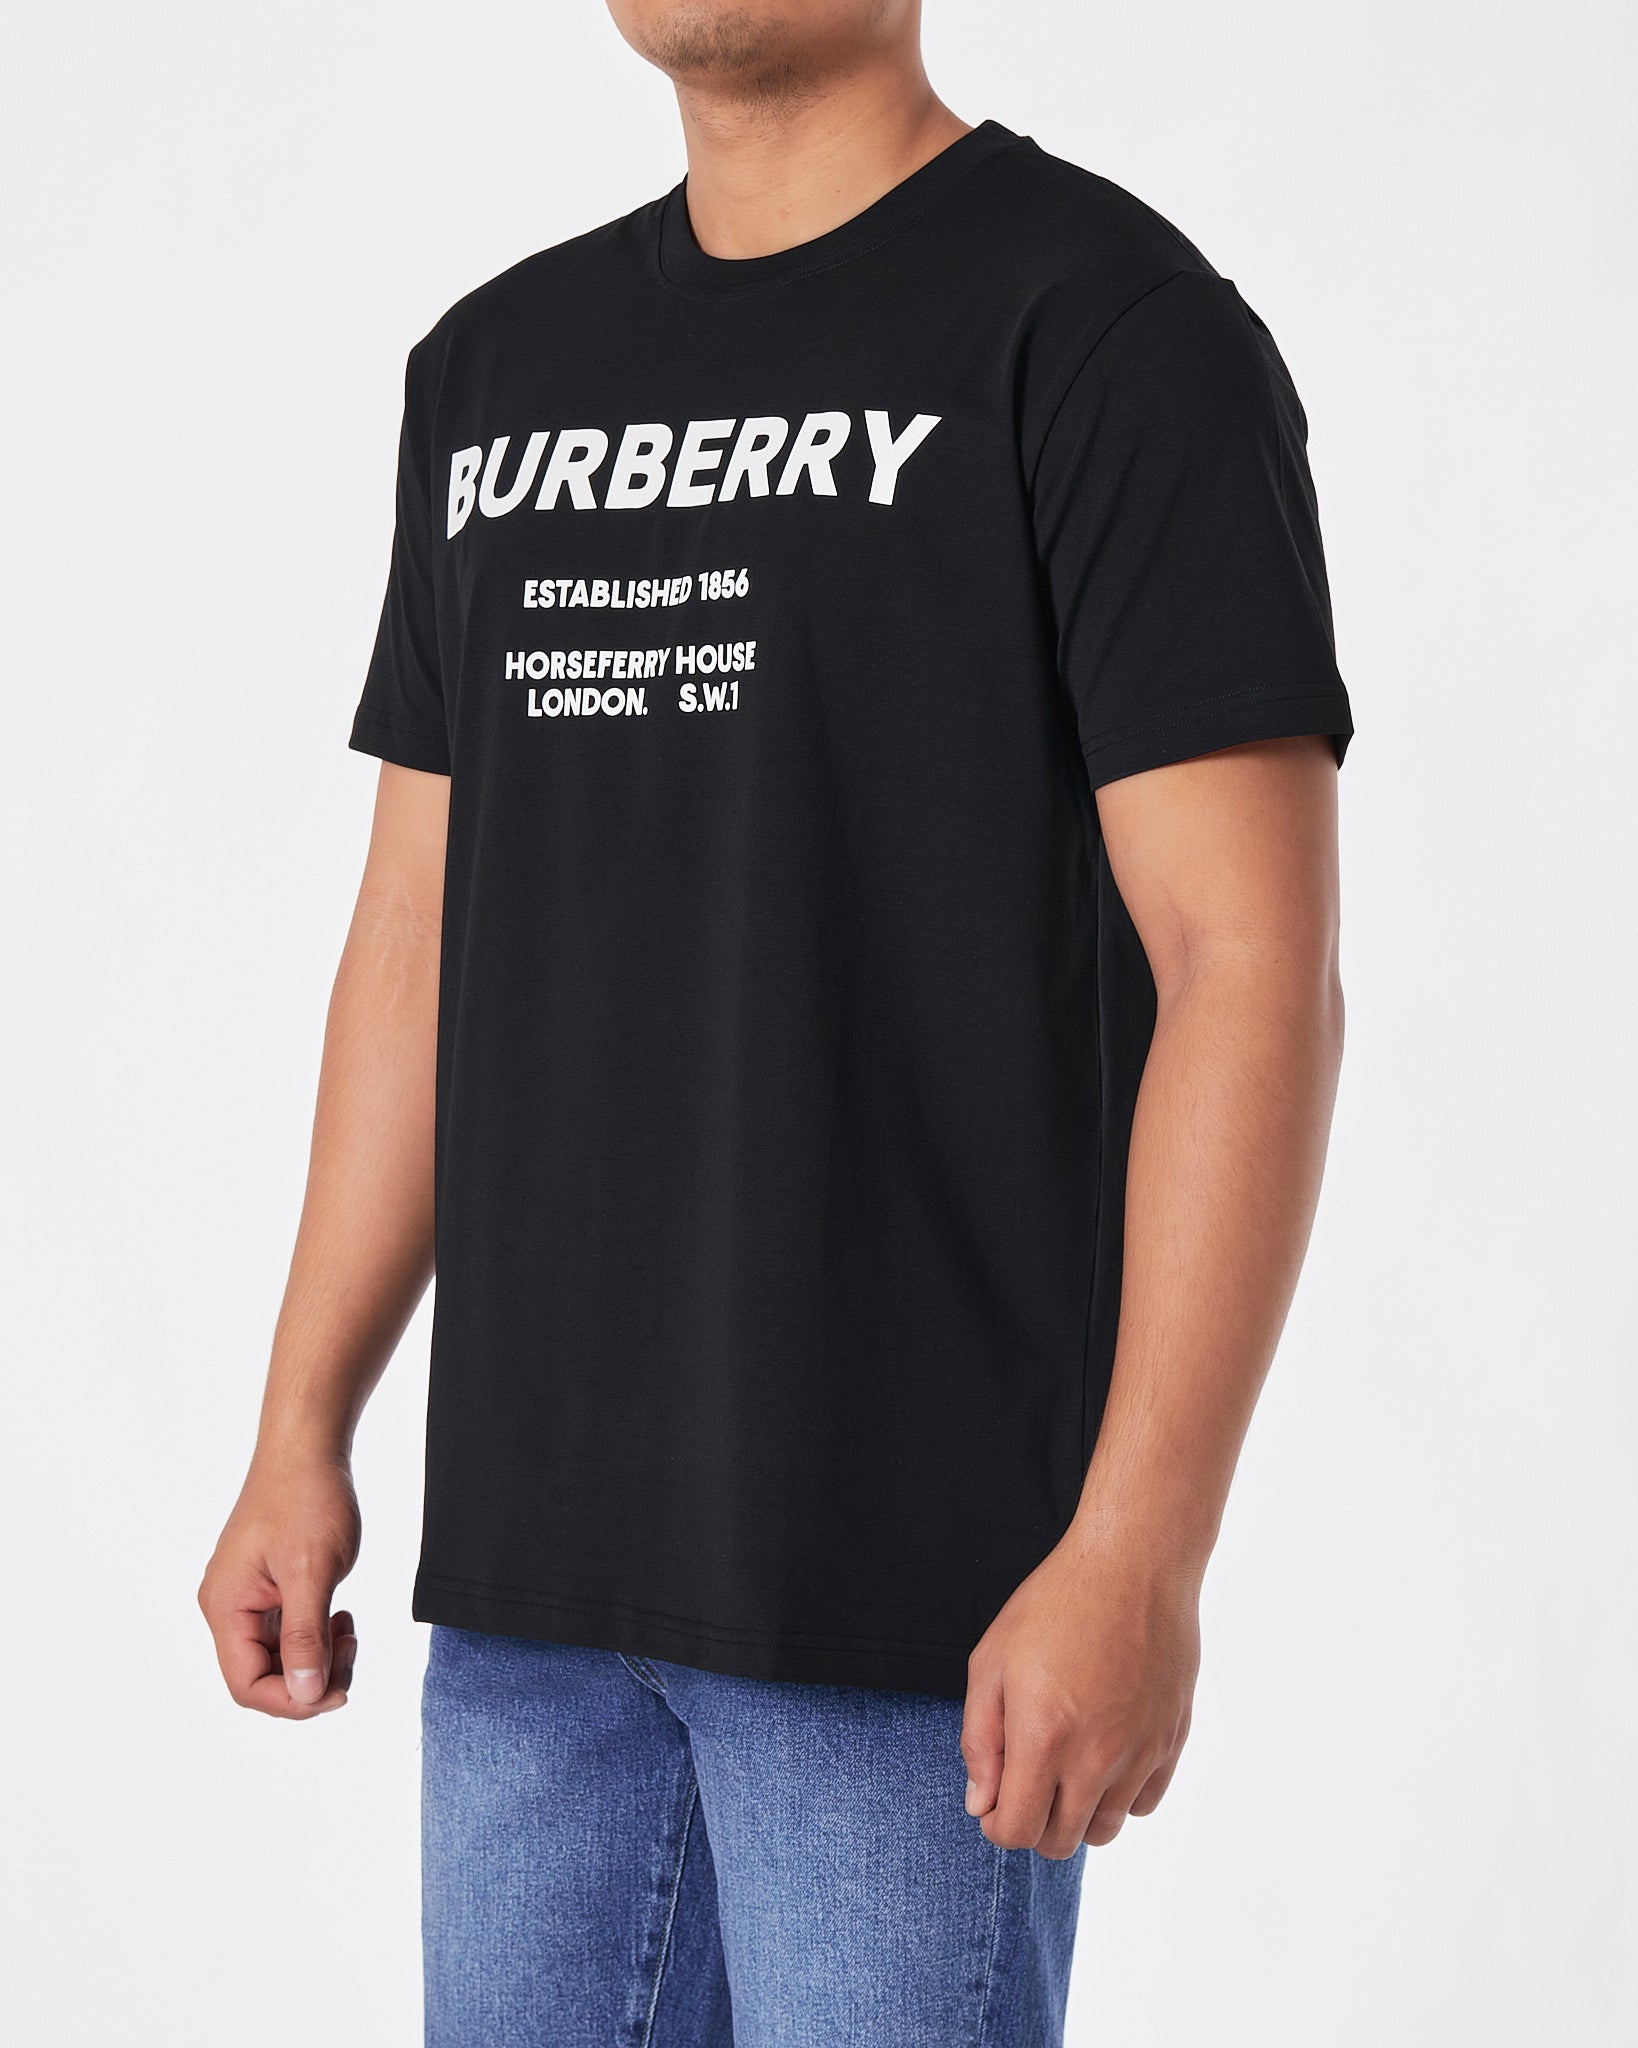 BUR Logo Printed Men Black T-Shirt 16.90